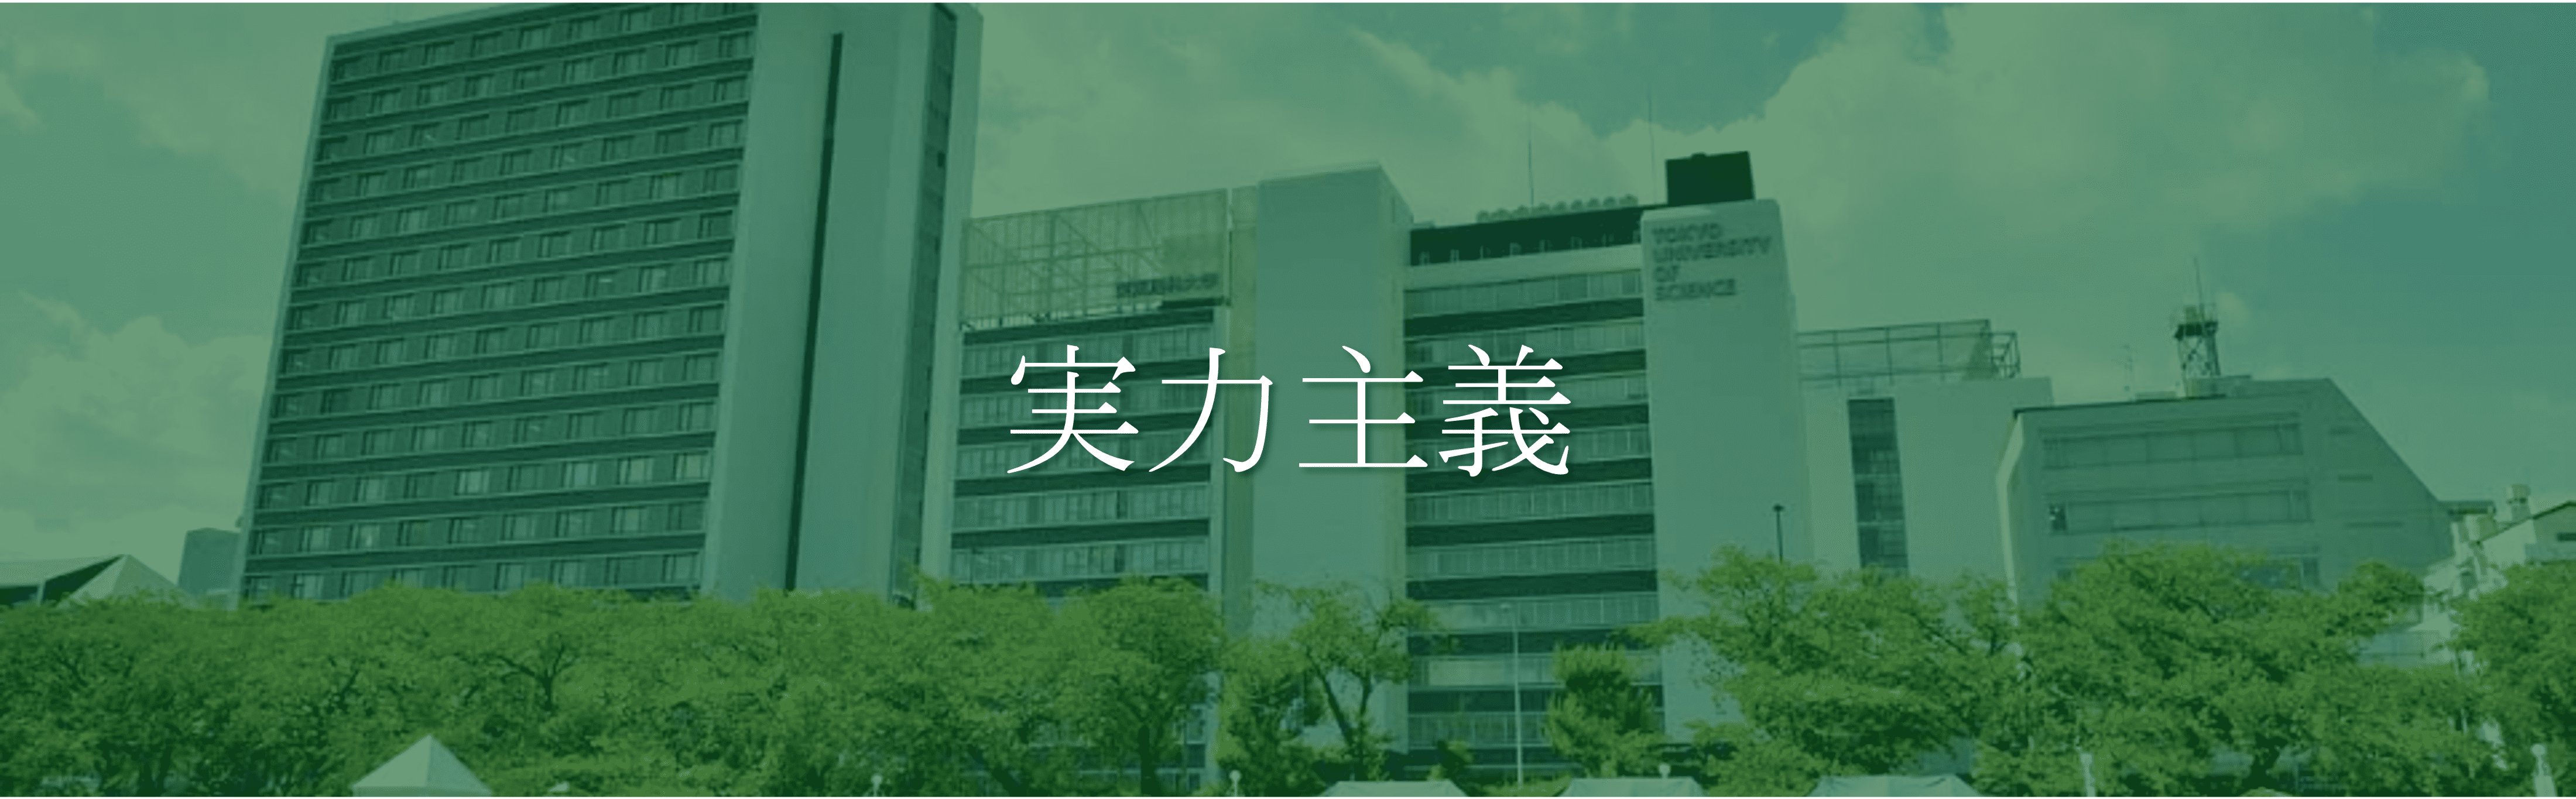 東京理科大学 モットー